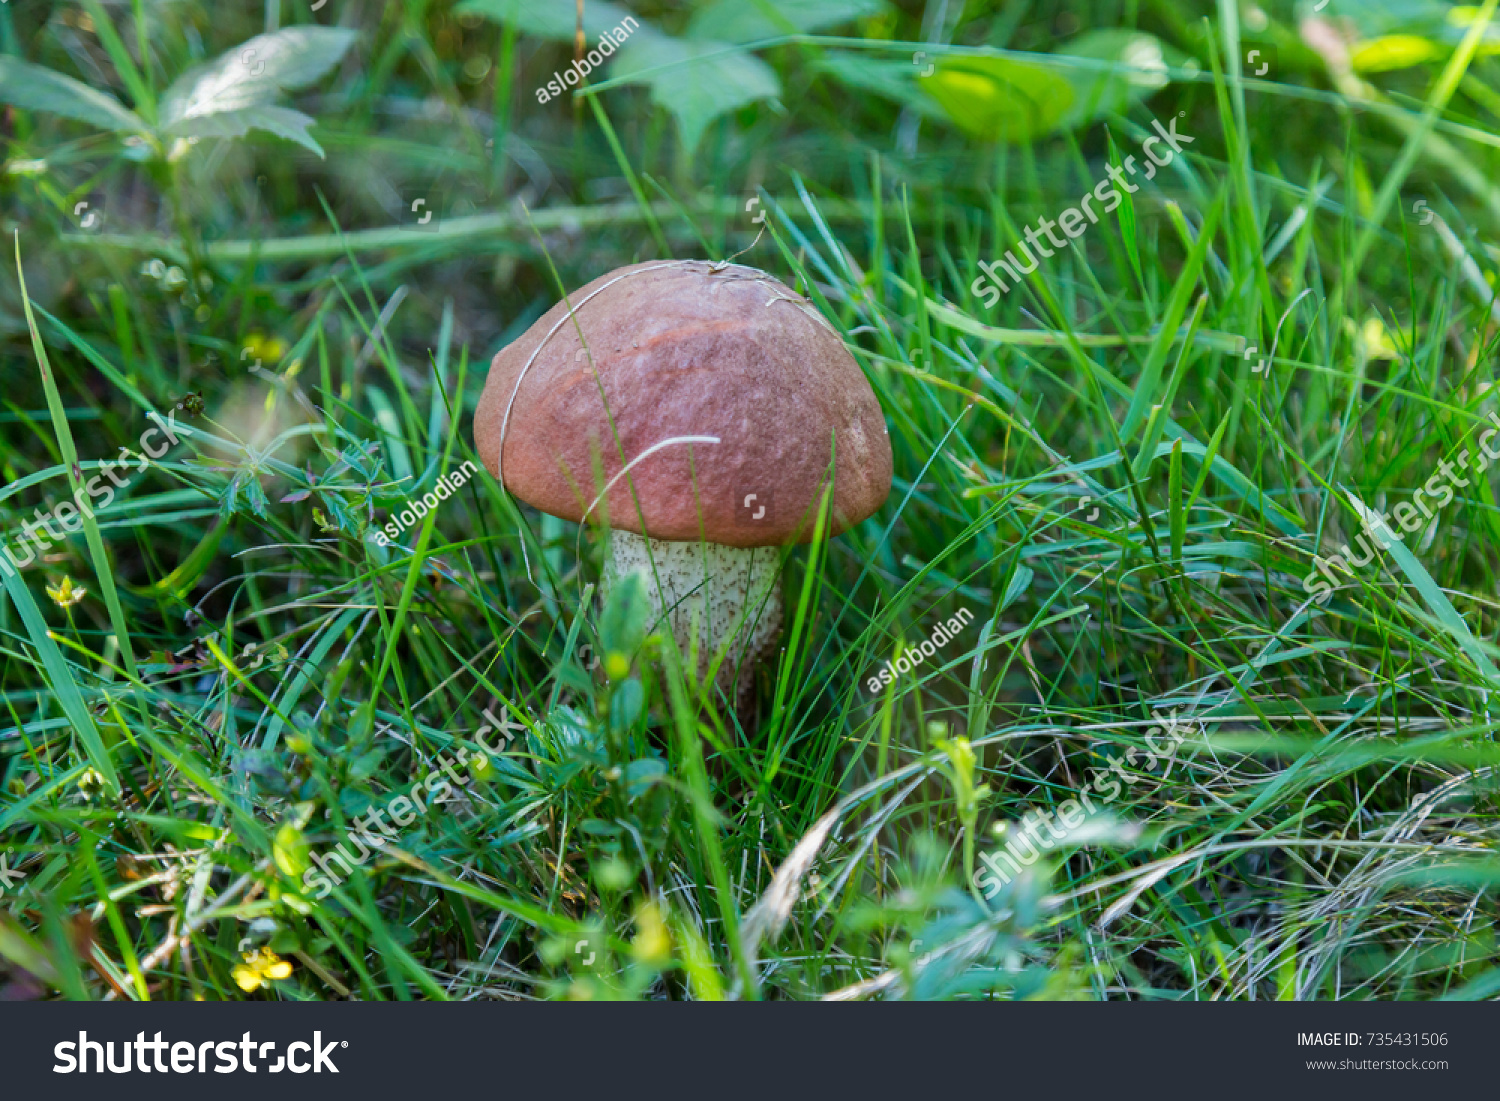 несъедобные грибы калужской области с фото